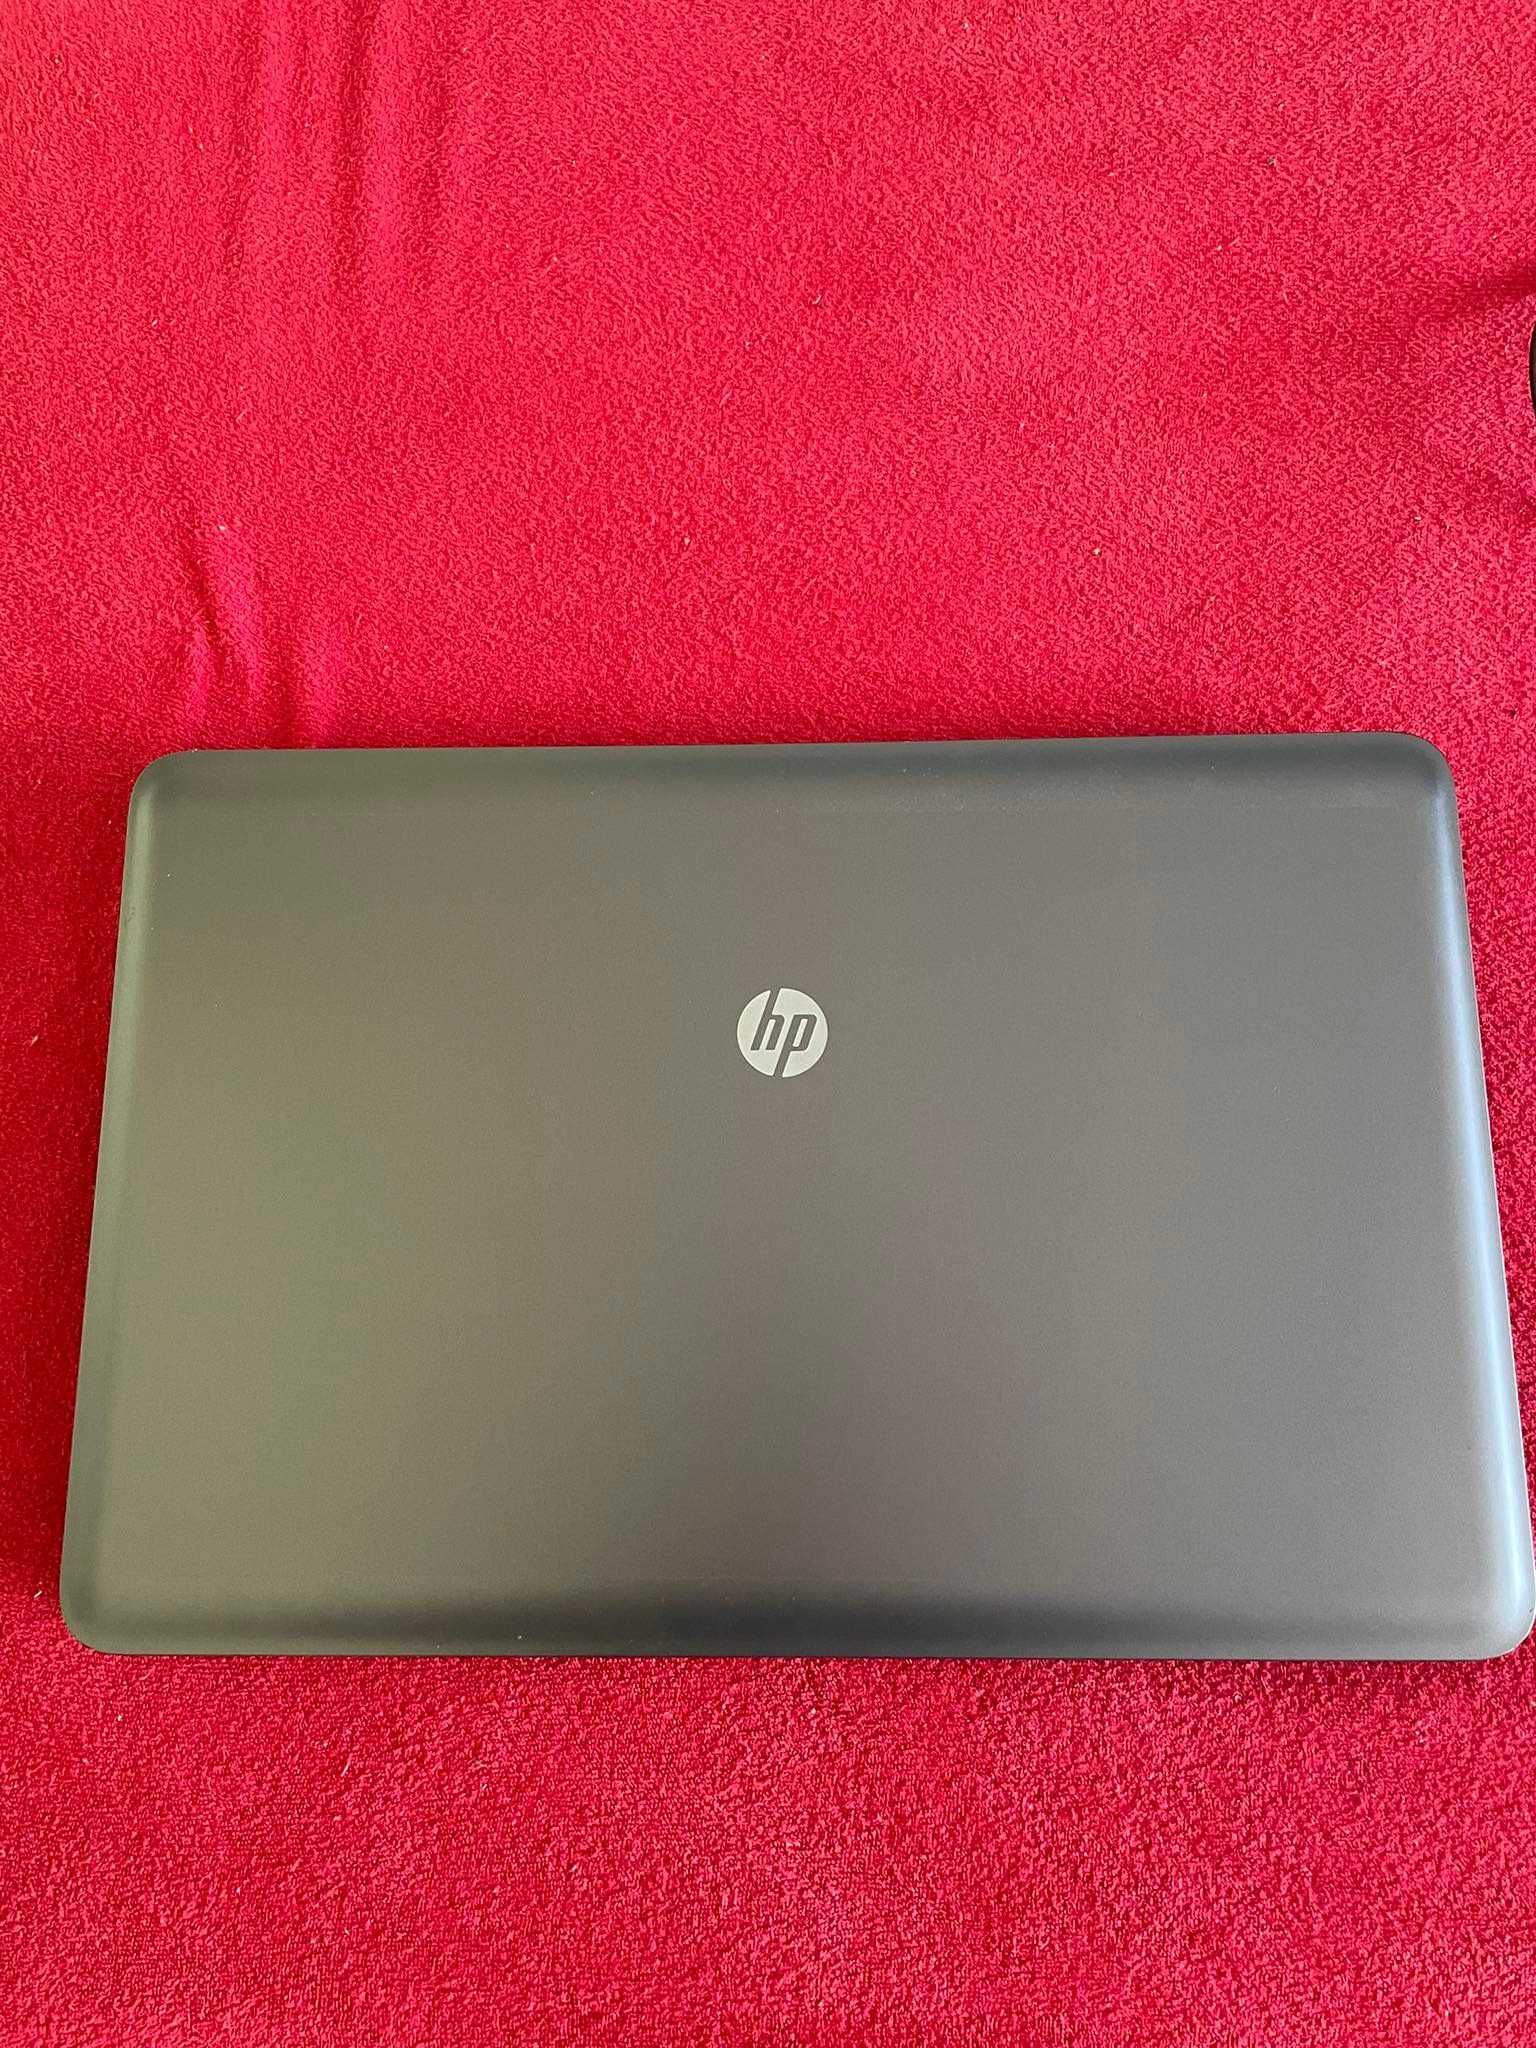 Używany Laptop HP 655 sprawny